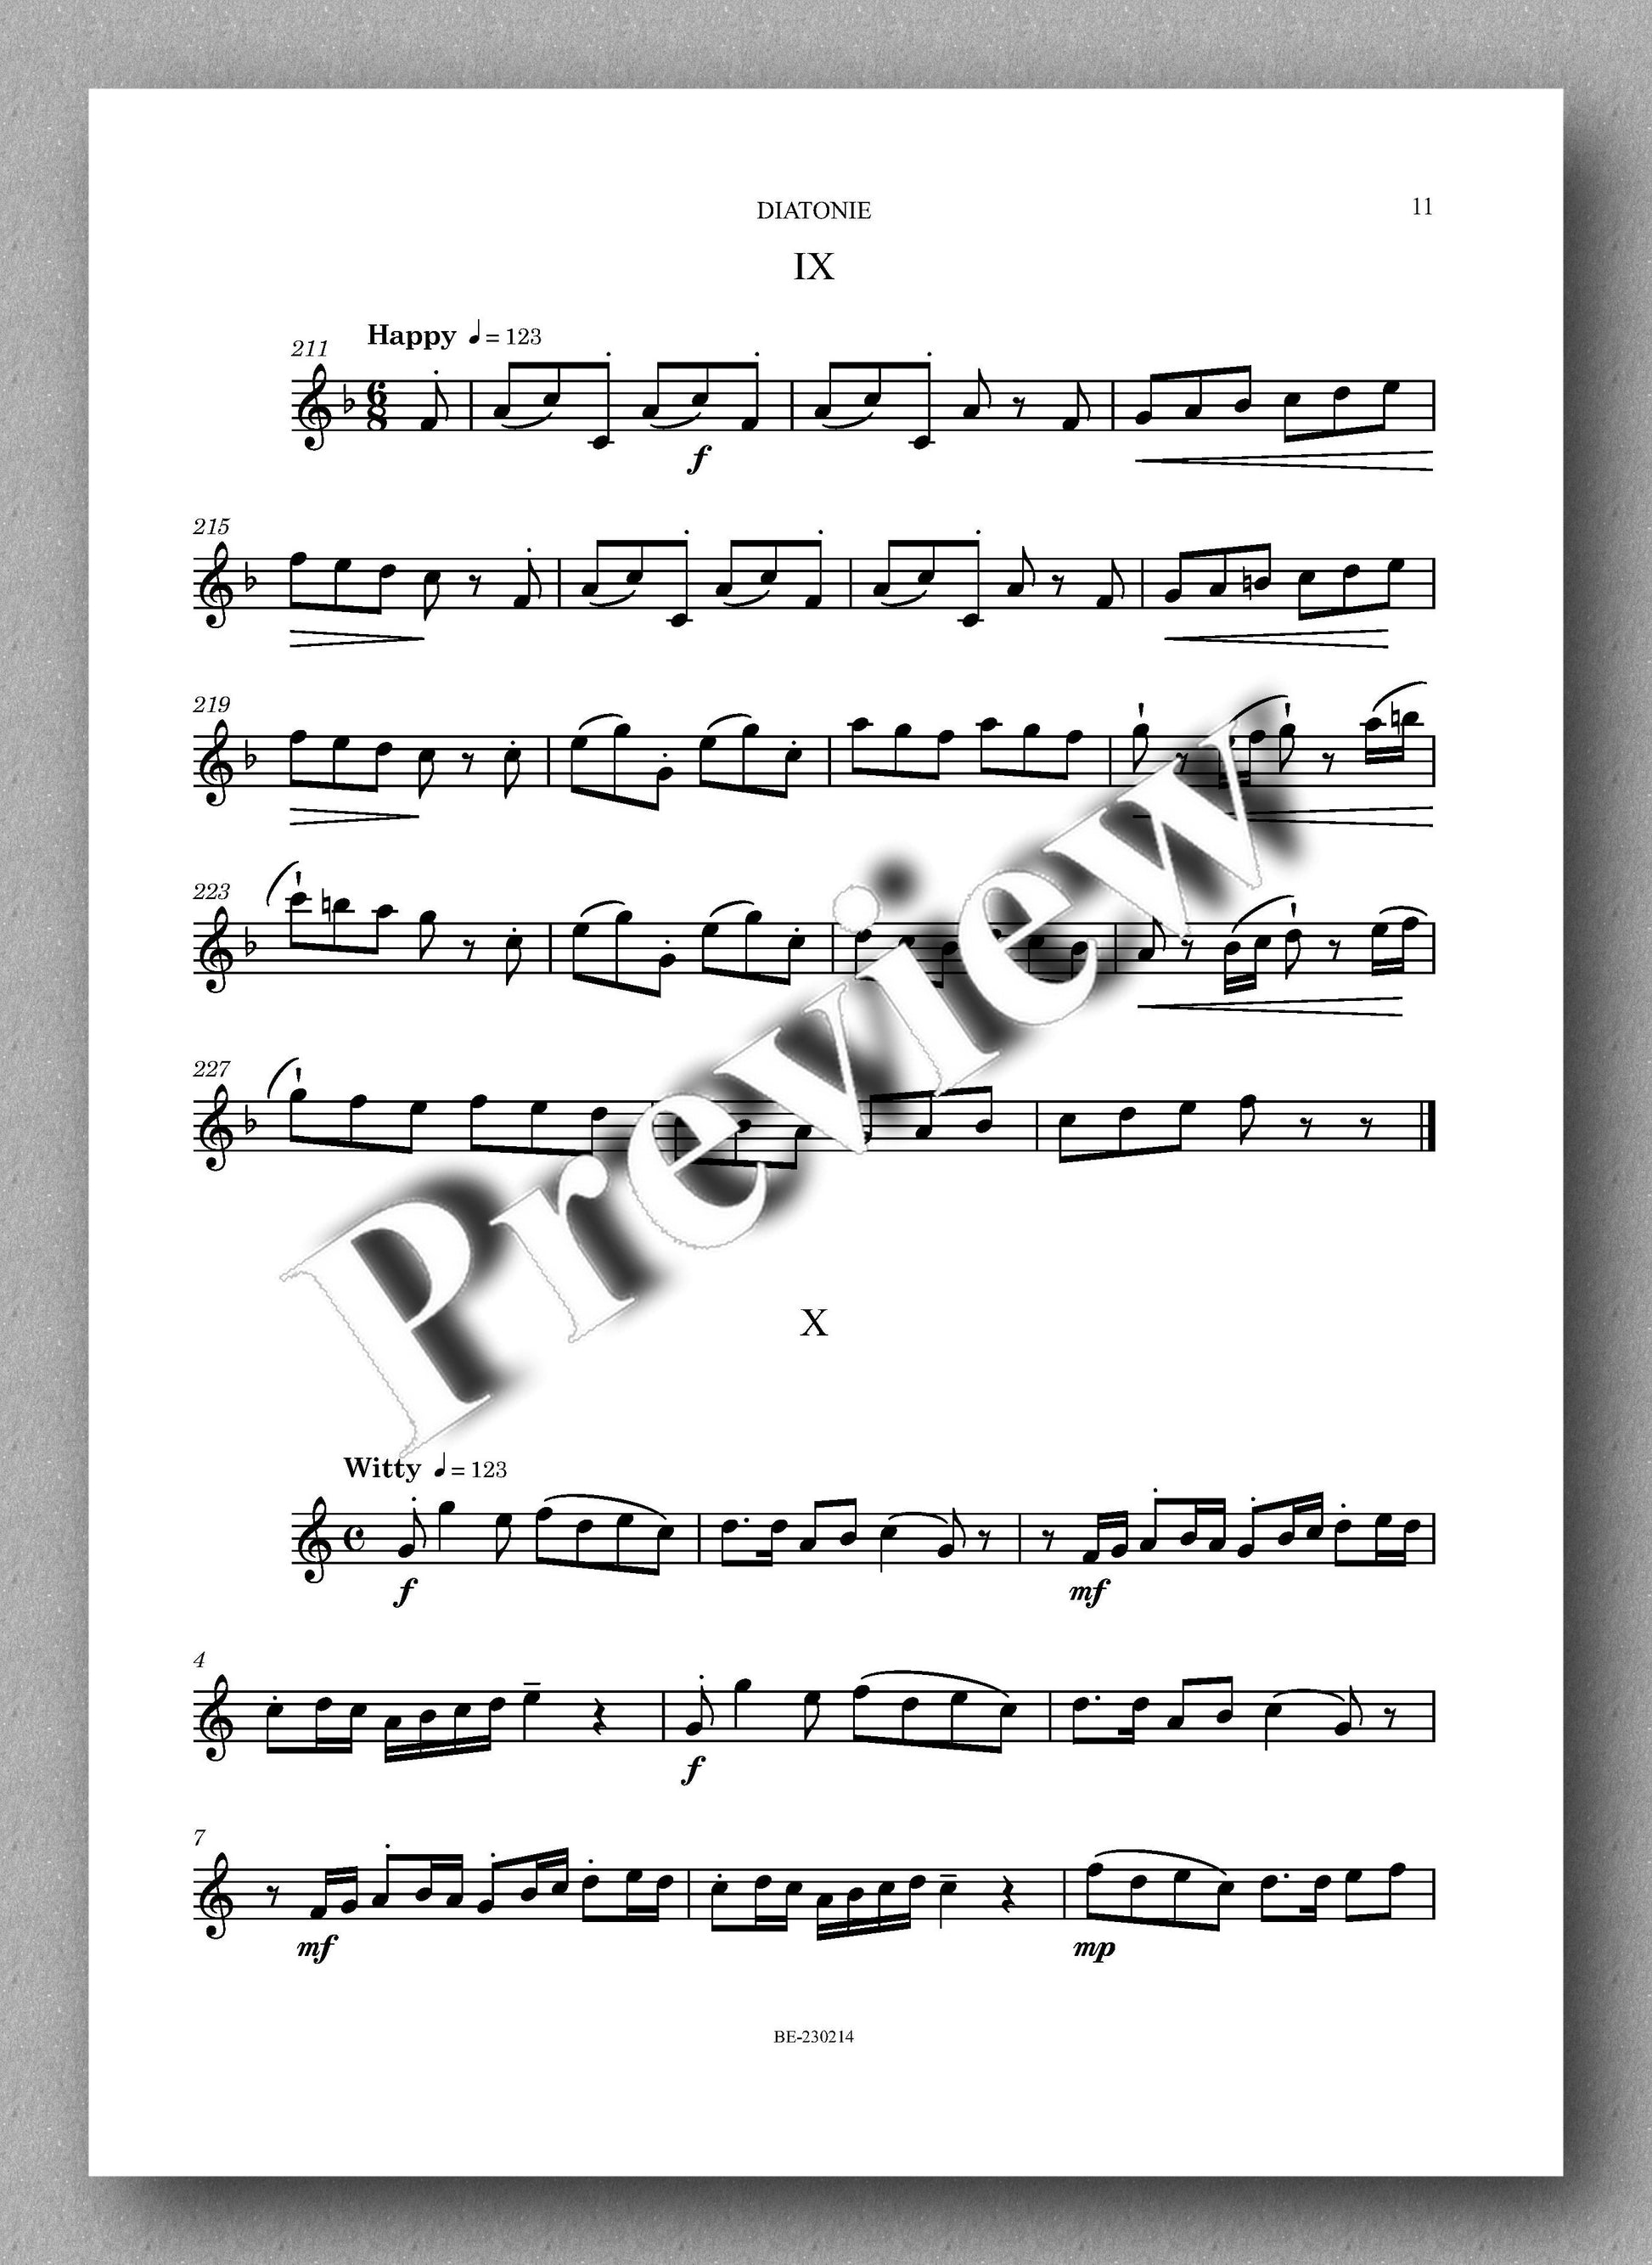 DIATONIE, Op. 228 by  Leonello Capodaglio - preview of the music score 2